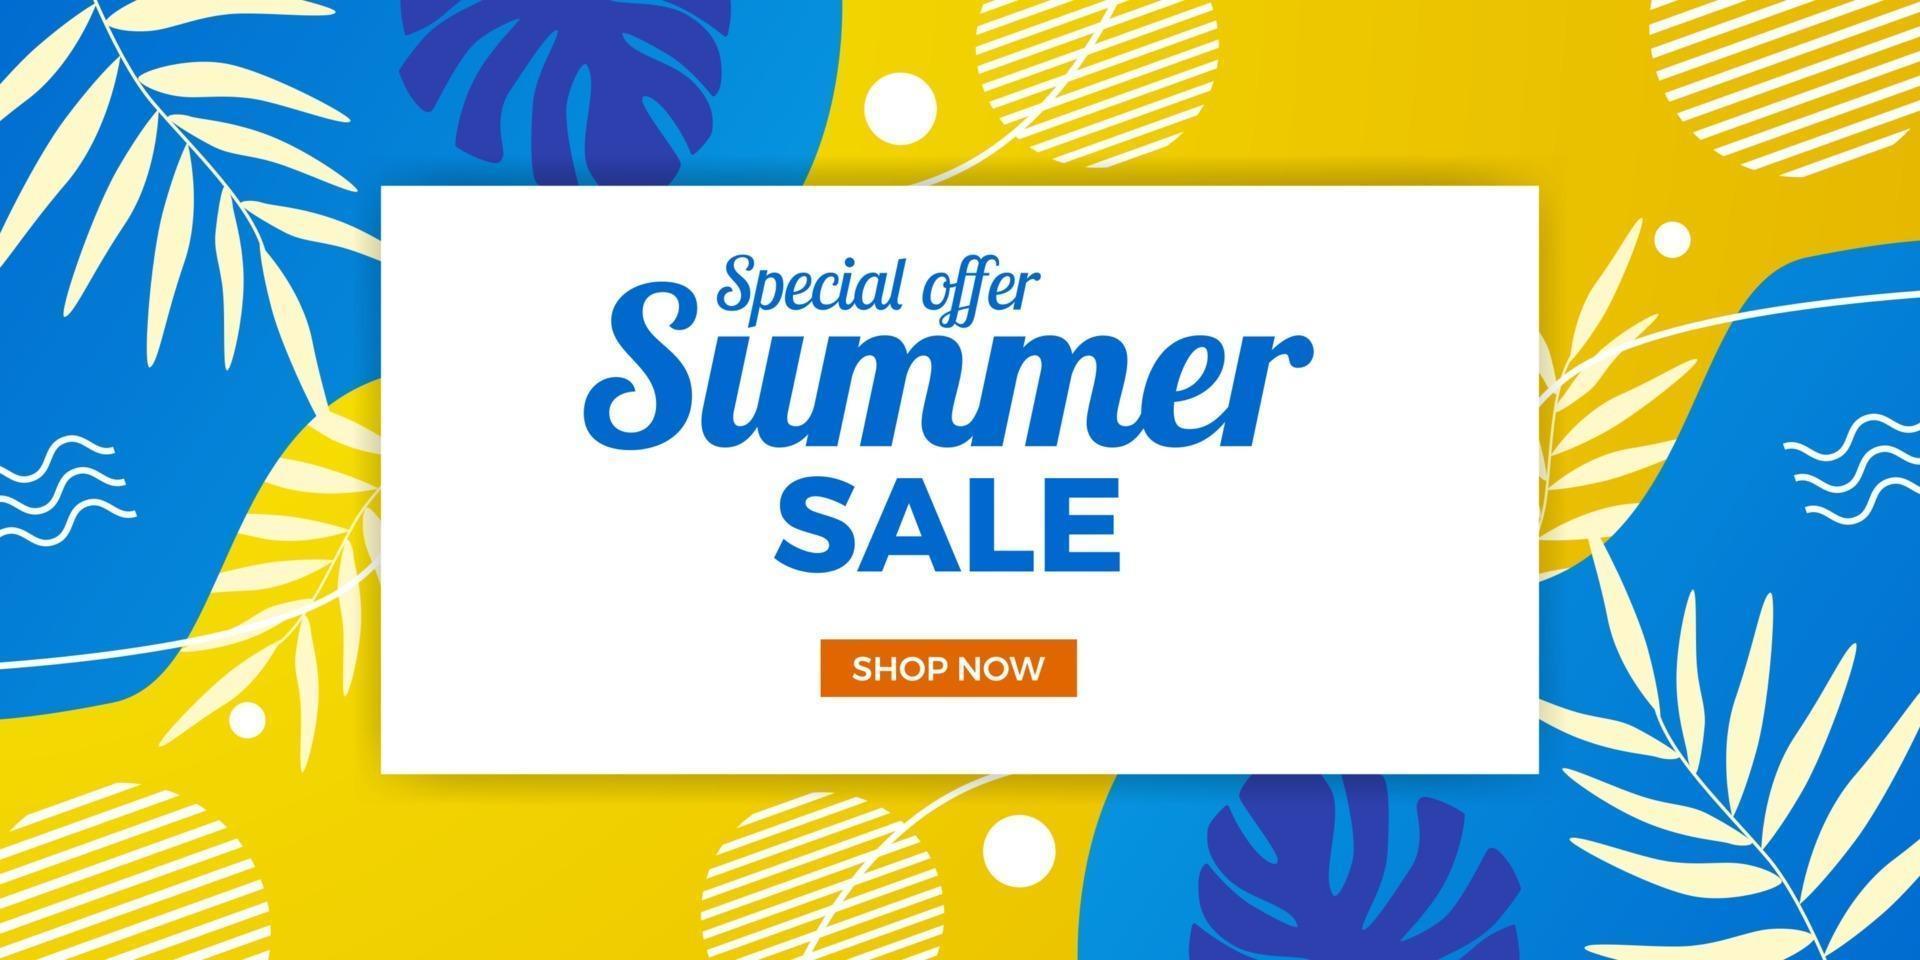 promoção de banner de oferta de venda de verão na moda legal com estilo abstrato de memphis com fundo amarelo e azul vetor